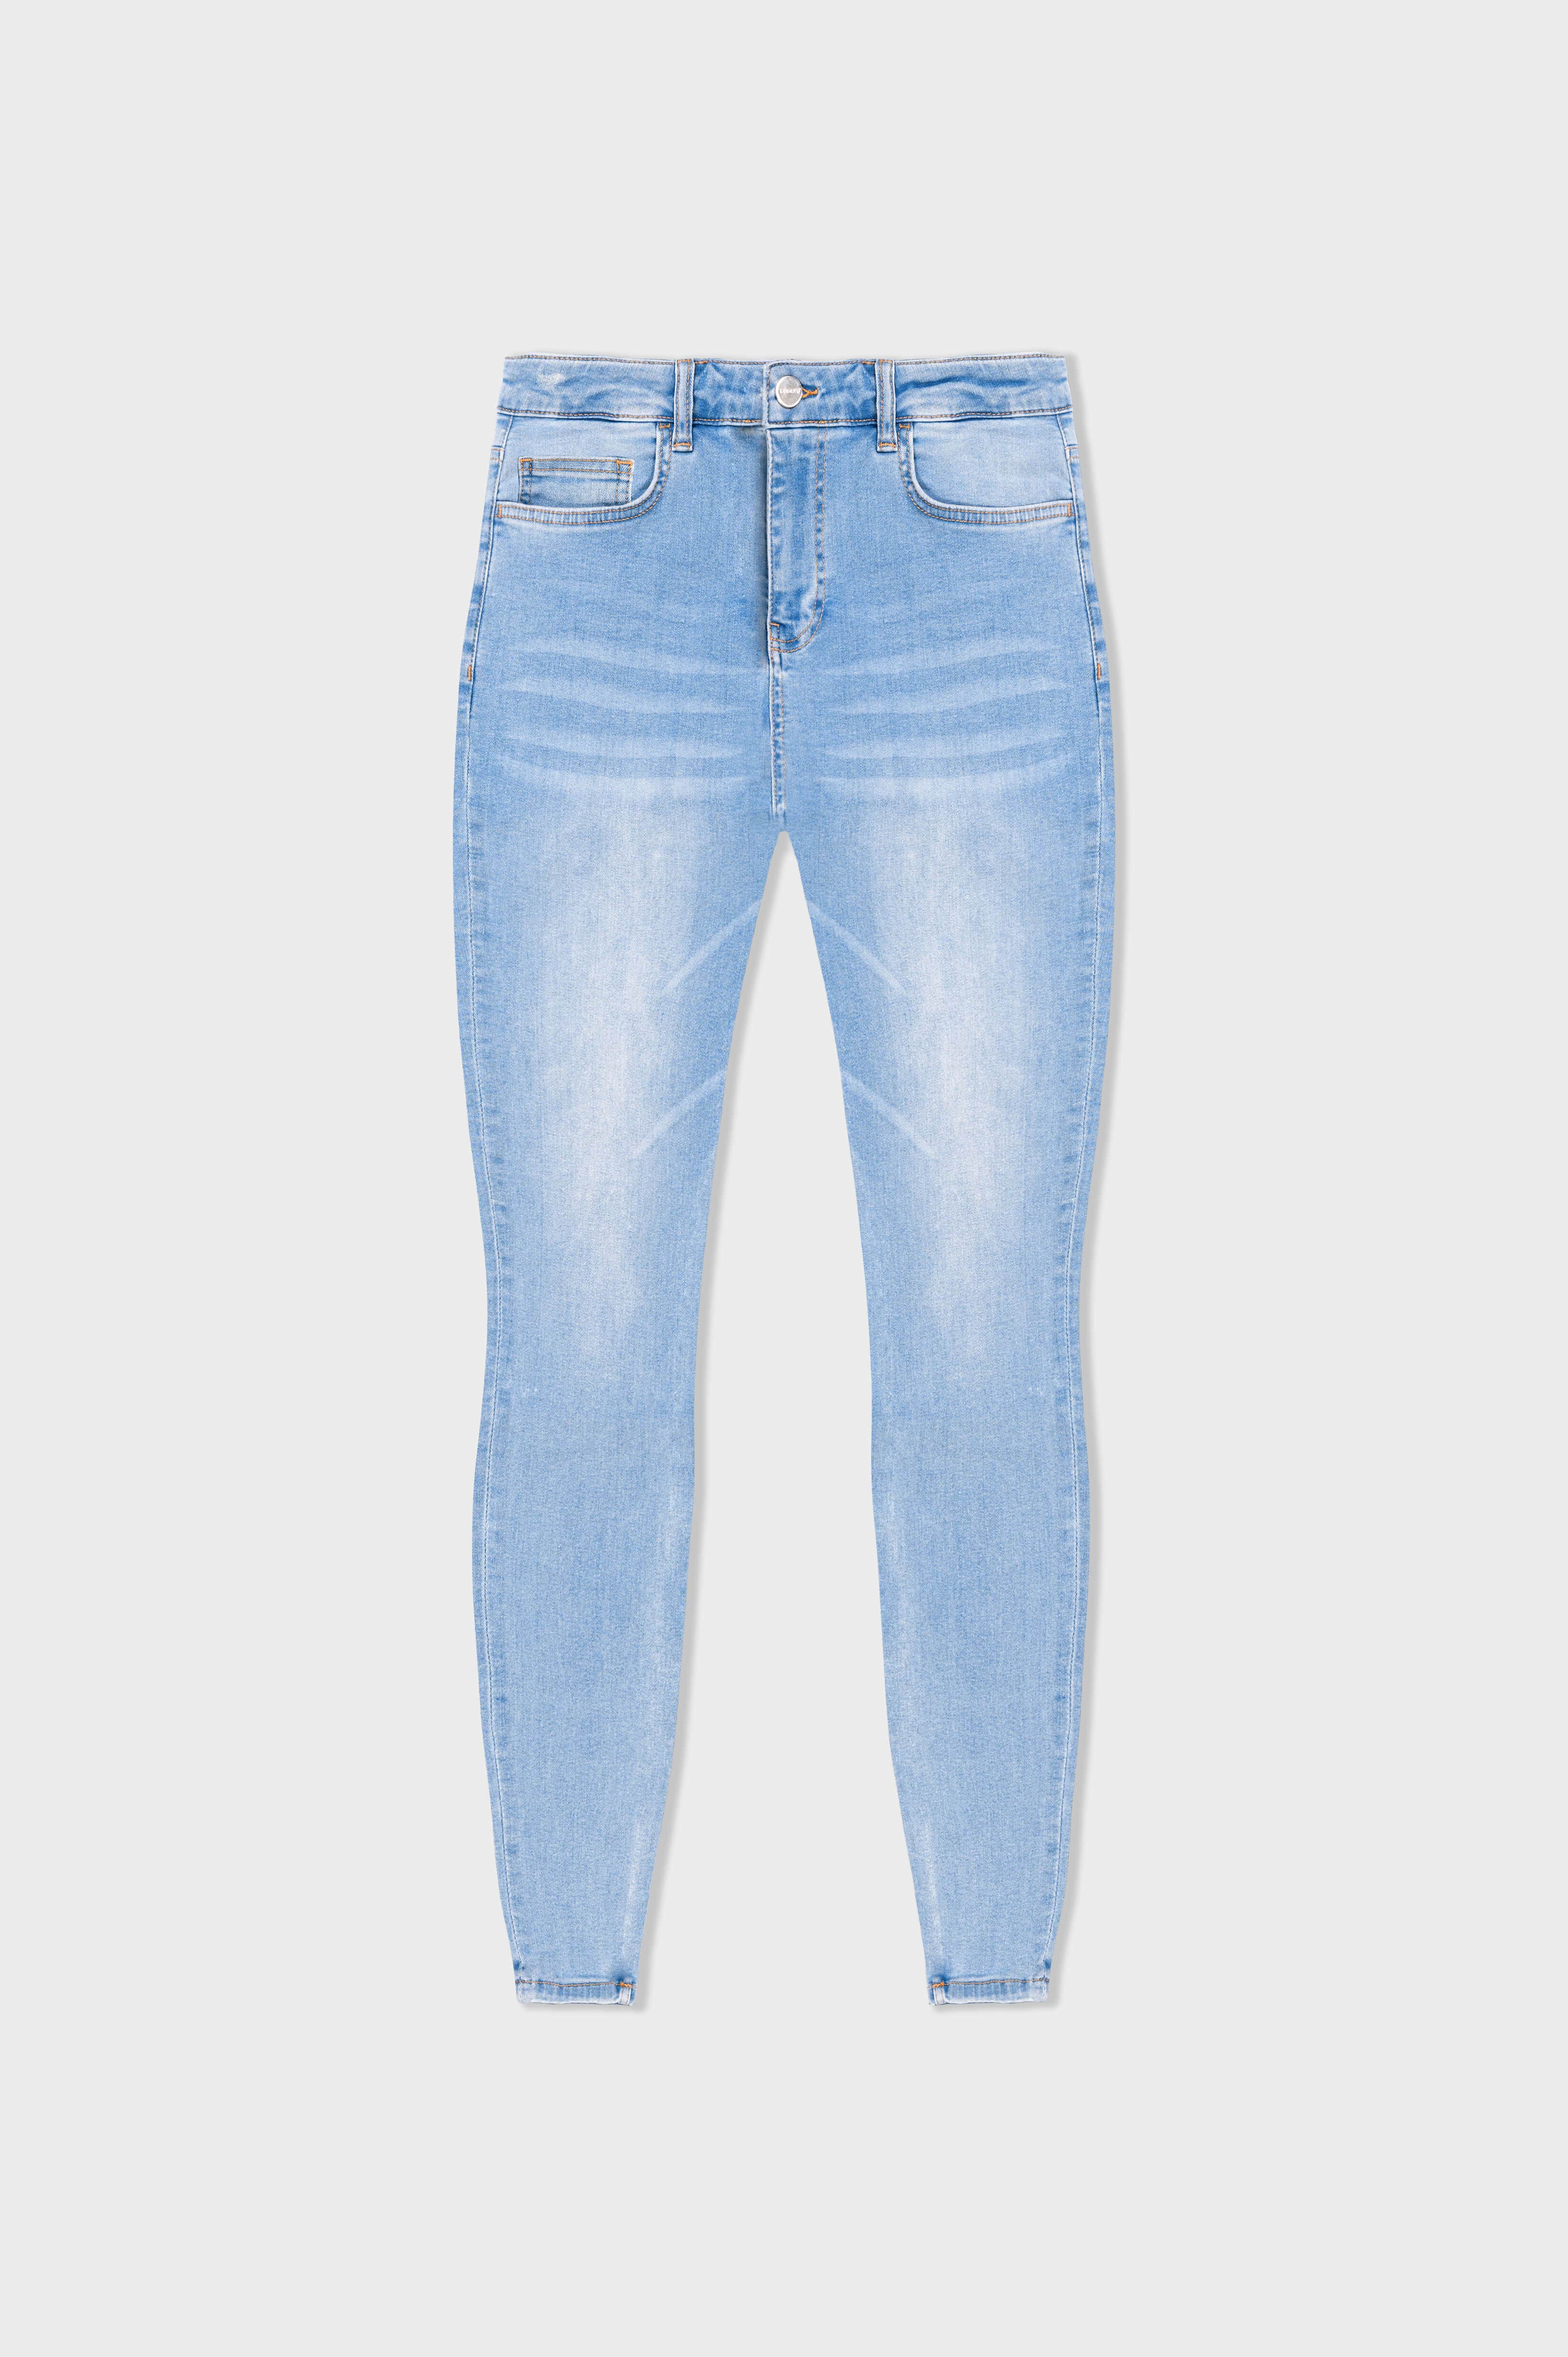 https://www.legendlondon.co/cdn/shop/files/legend-london-jeans-spray-on-light-blue-jeans-non-ripped-33012655849669.jpg?v=1691676140&width=3840